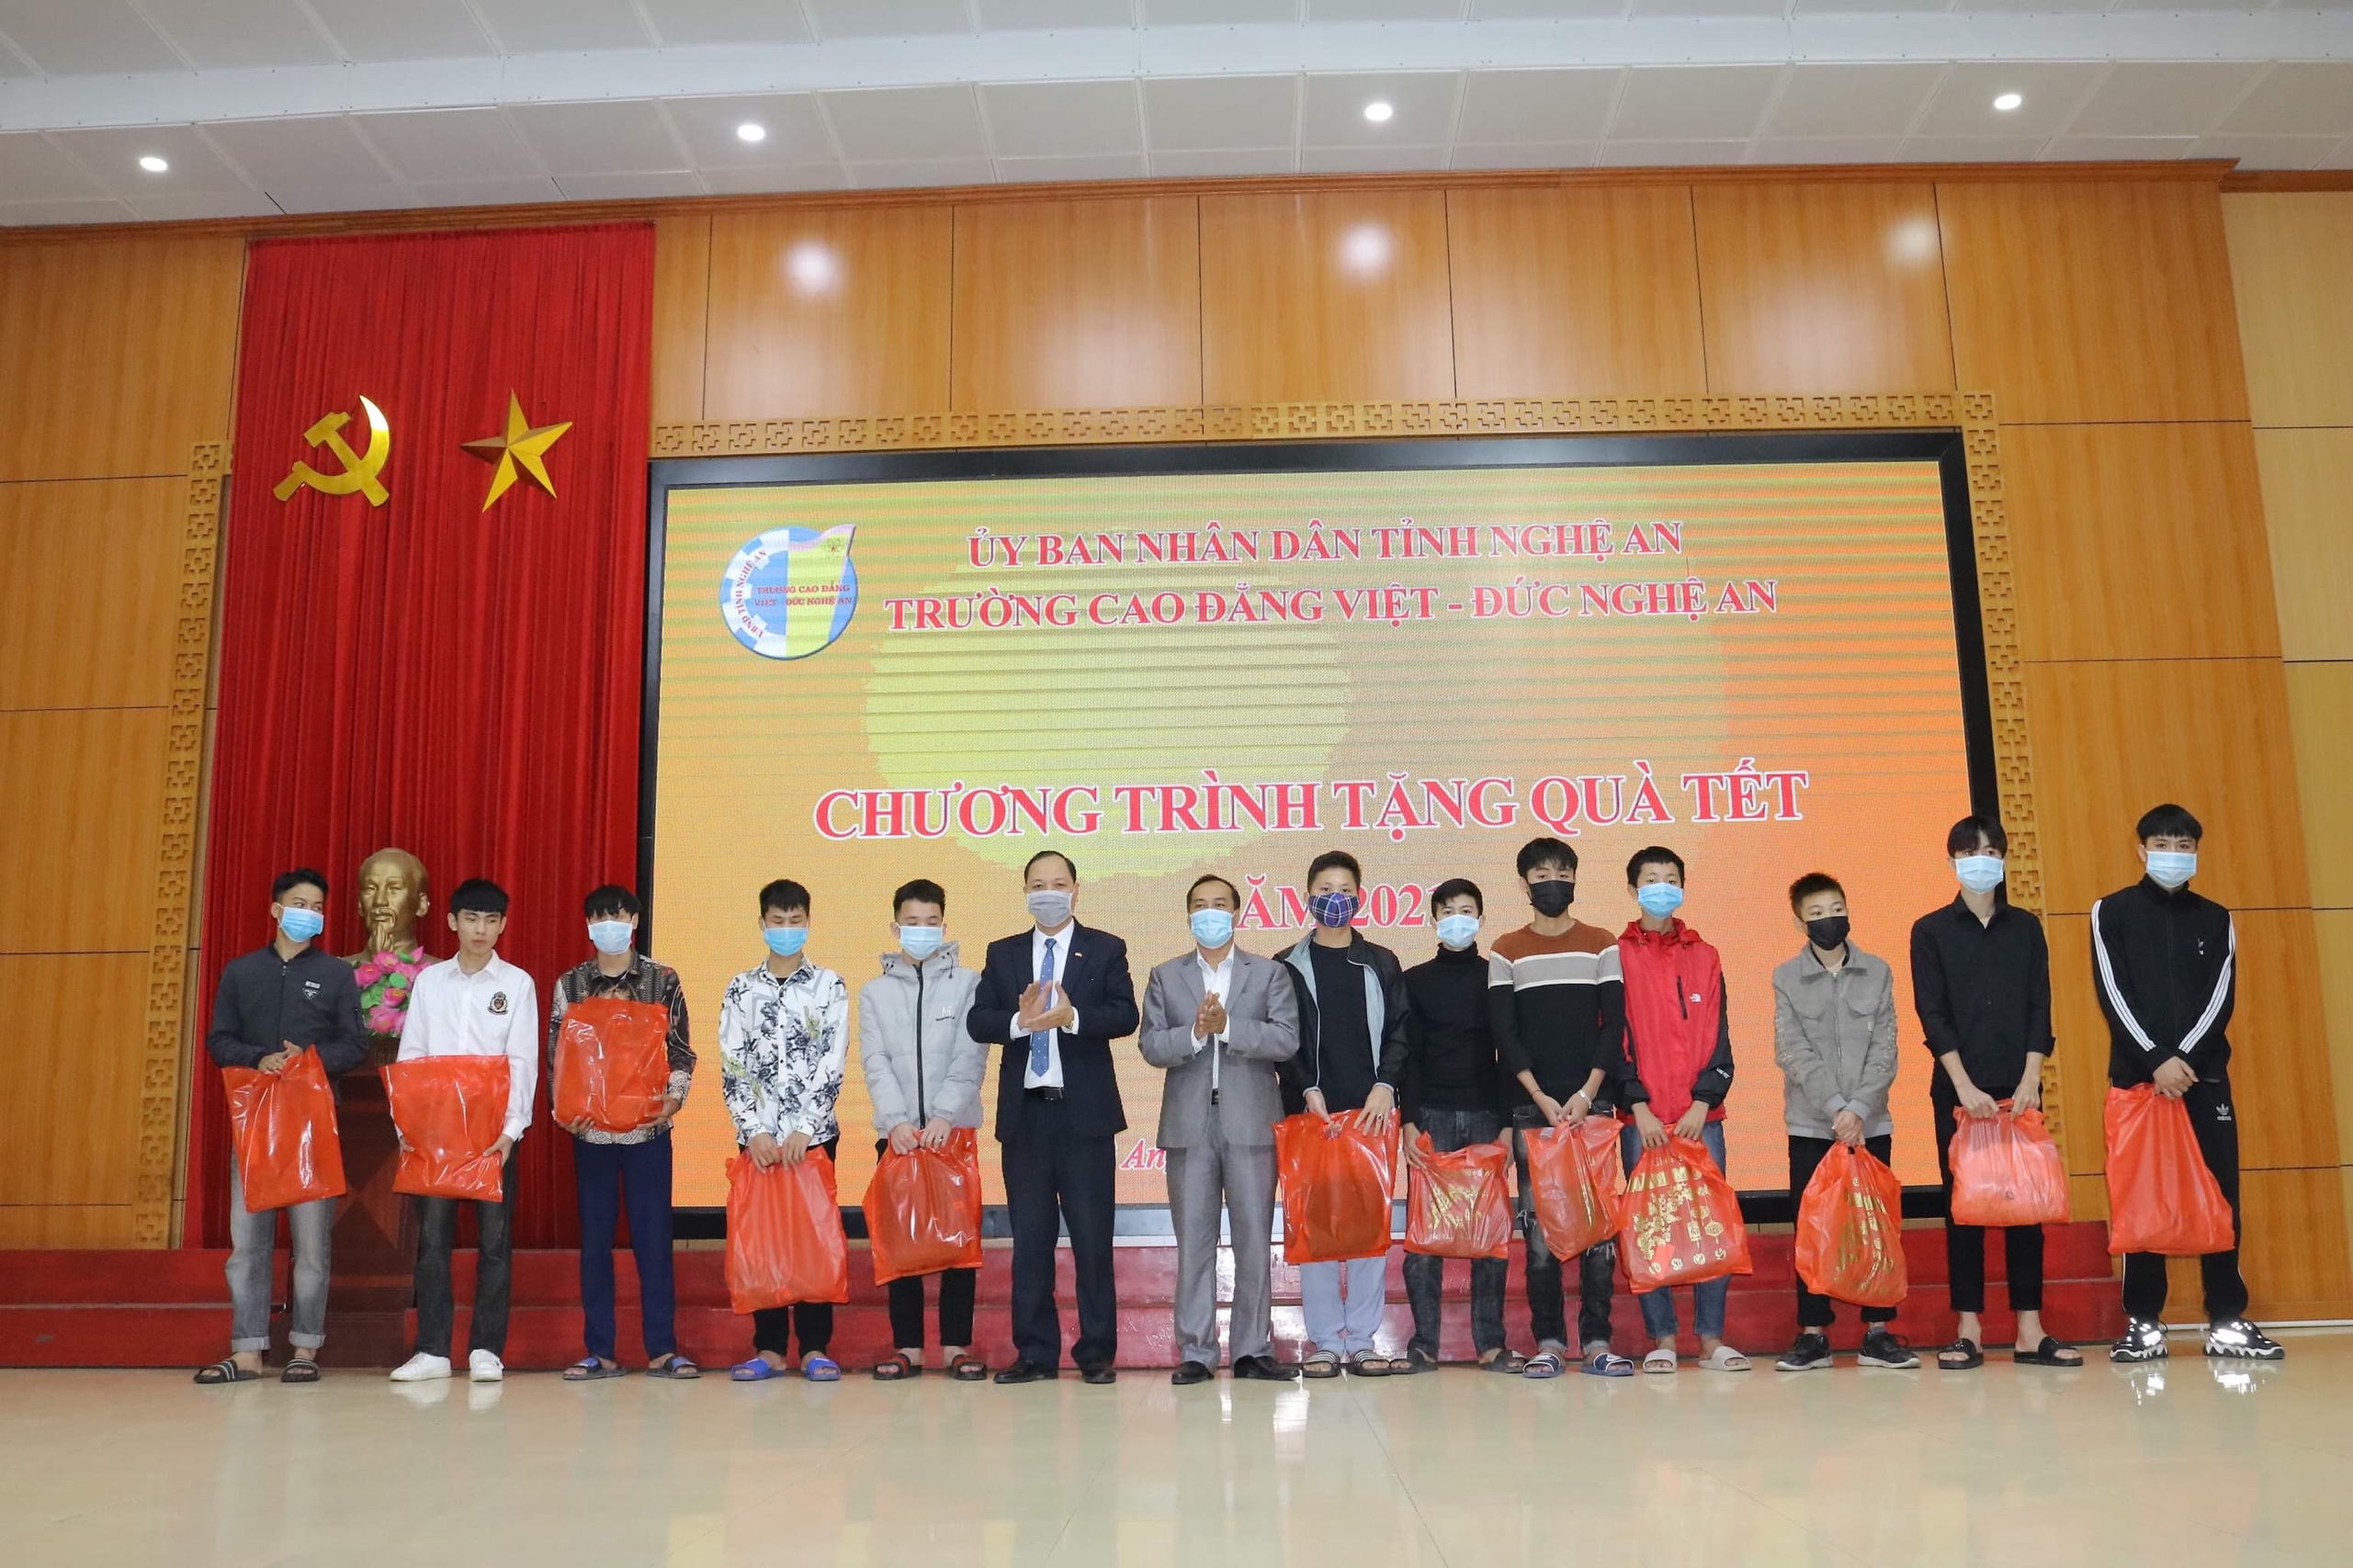 Trường Cao đẳng Việt - Đức Nghệ An tổ chức 